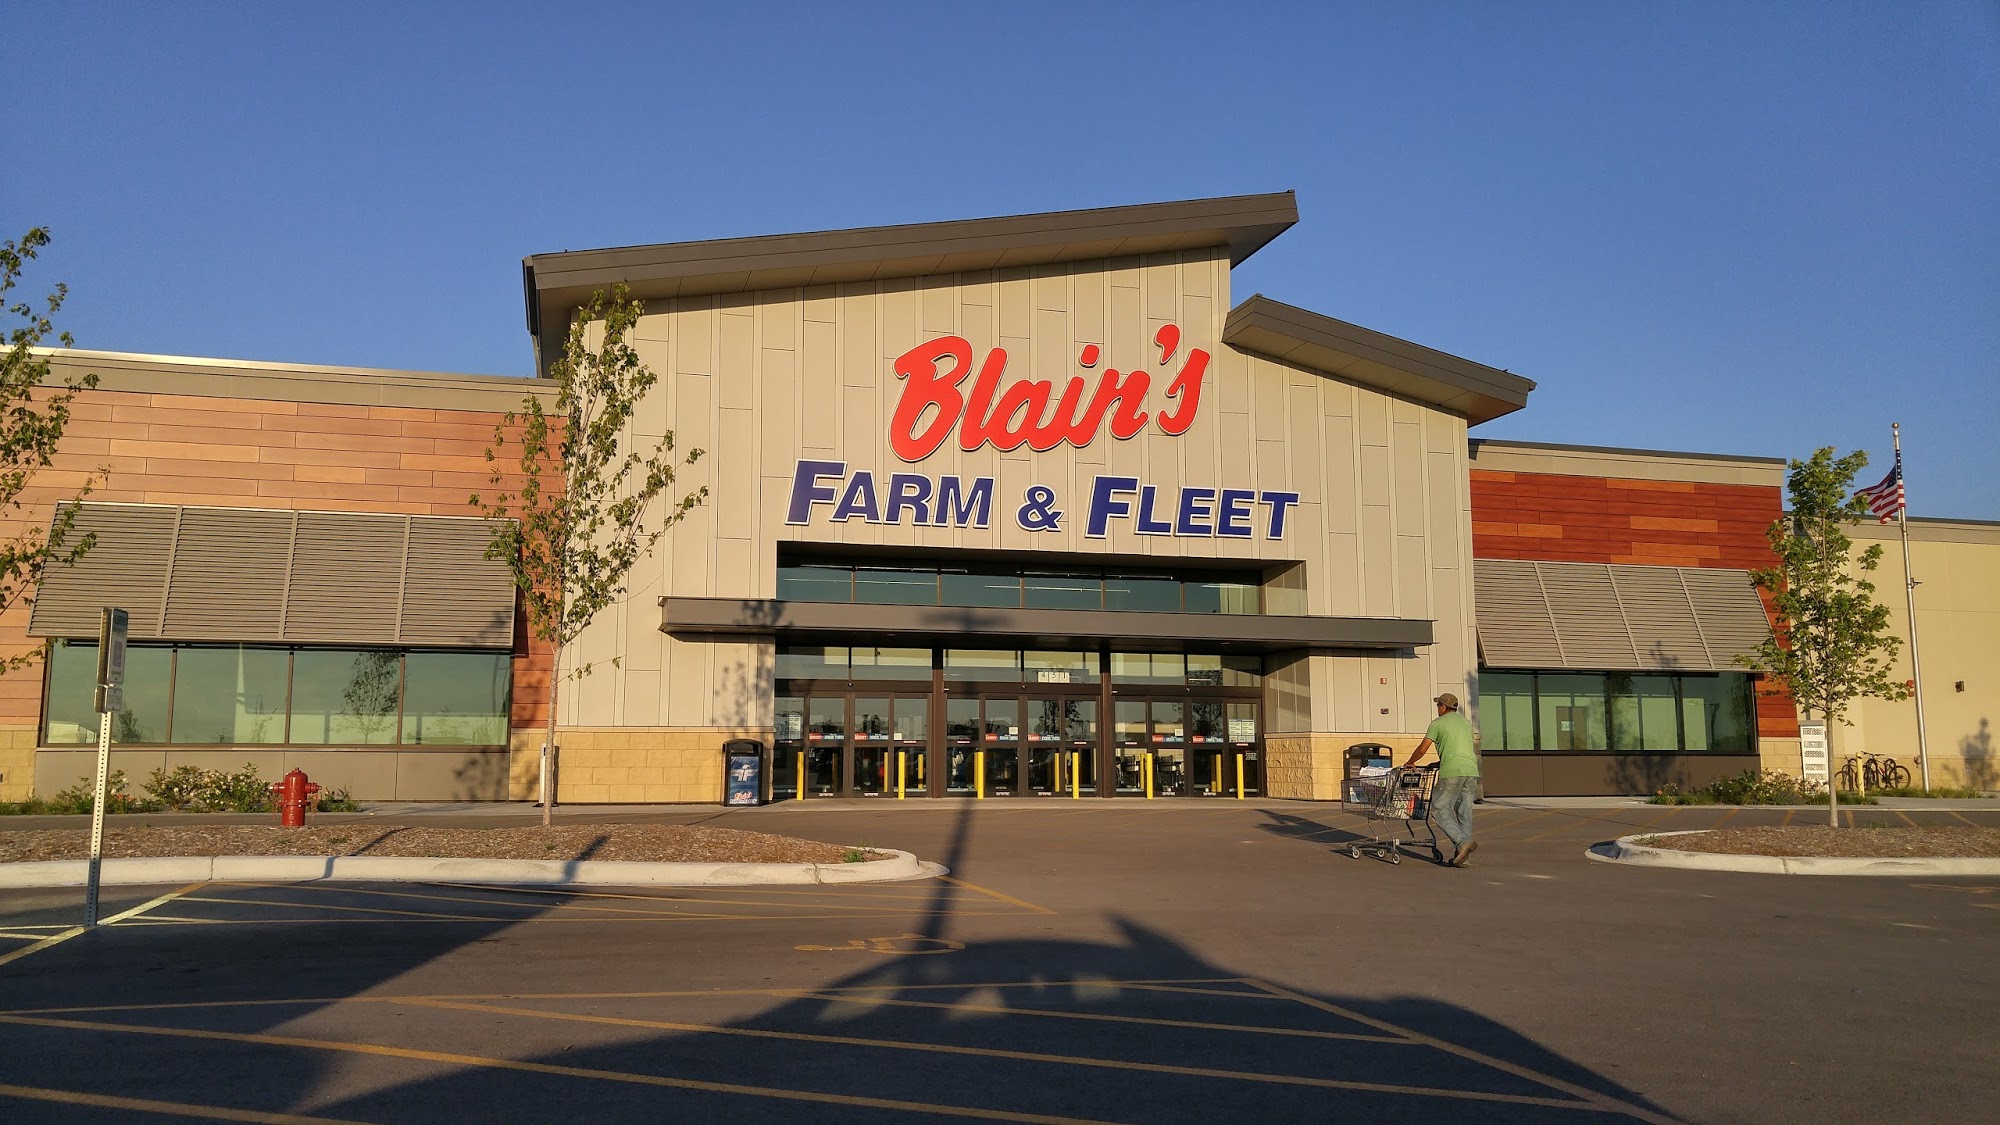 Blain's Farm & Fleet - Romeoville, Illinois